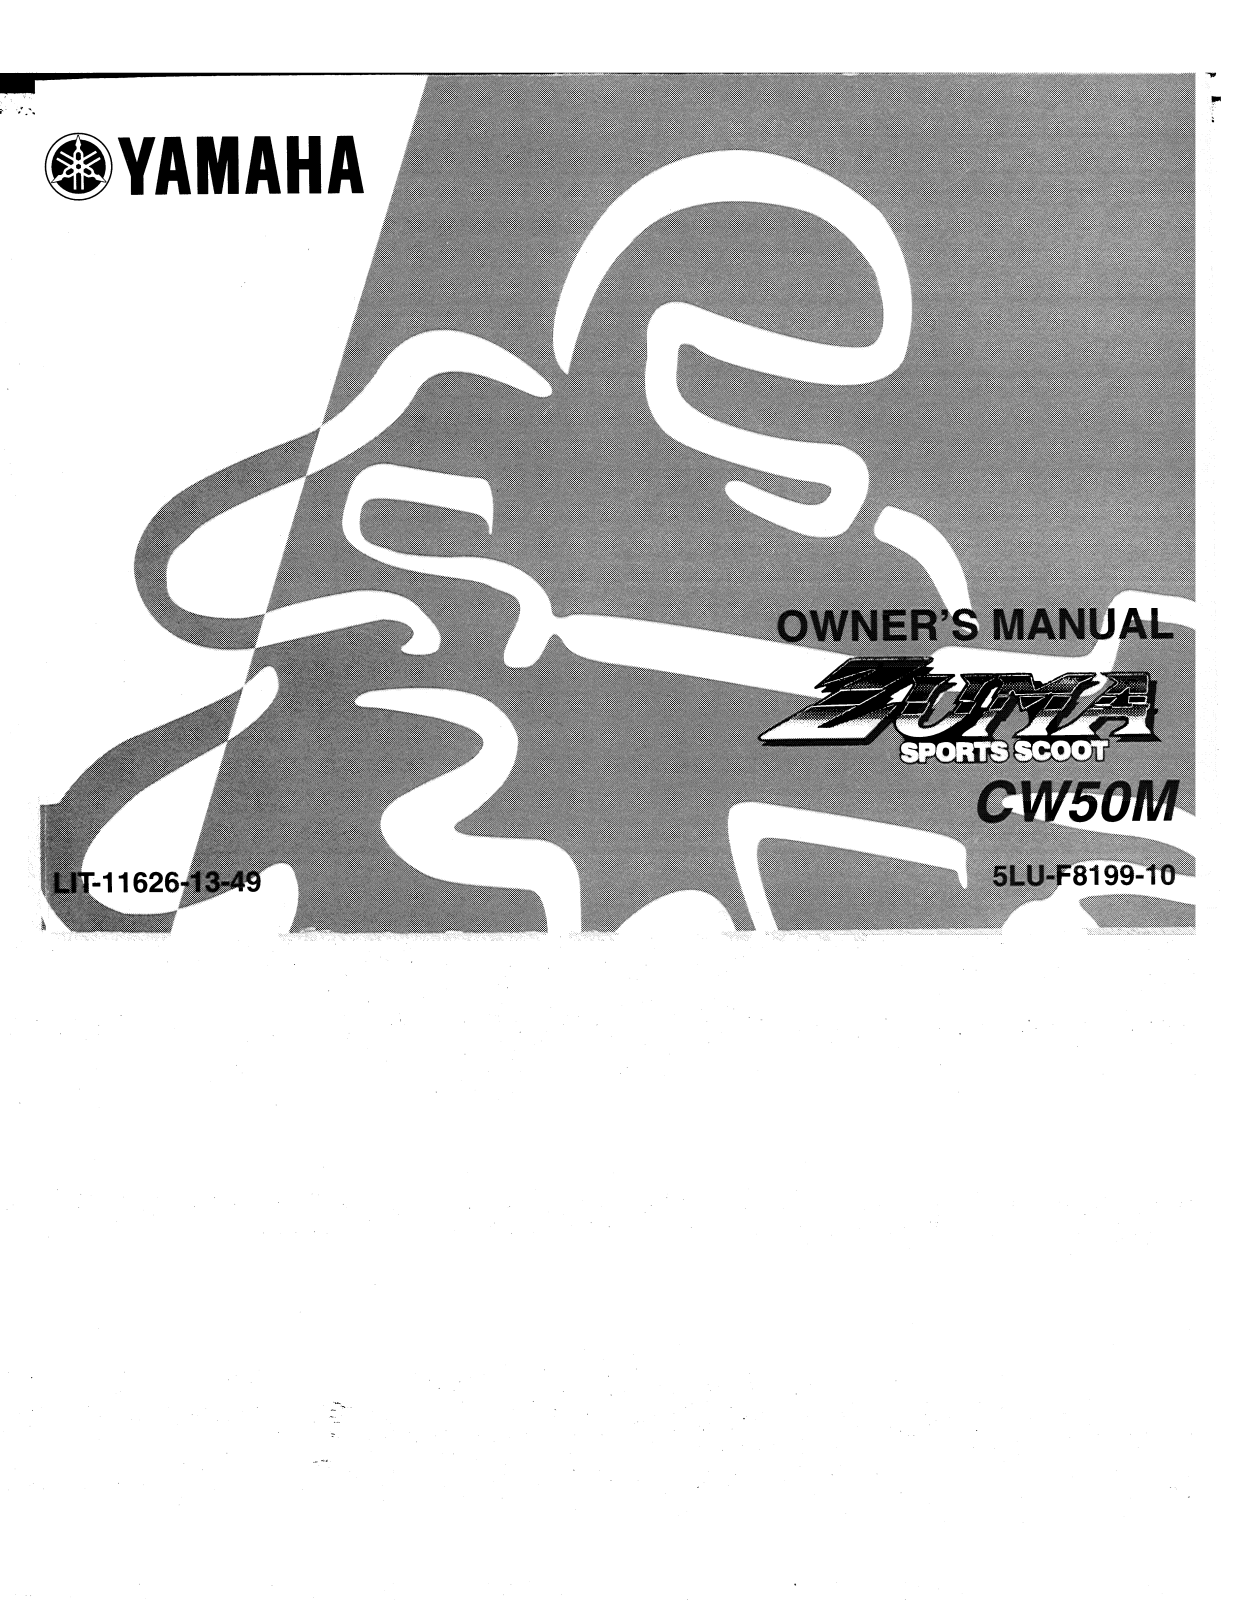 Yamaha CW50M User Manual